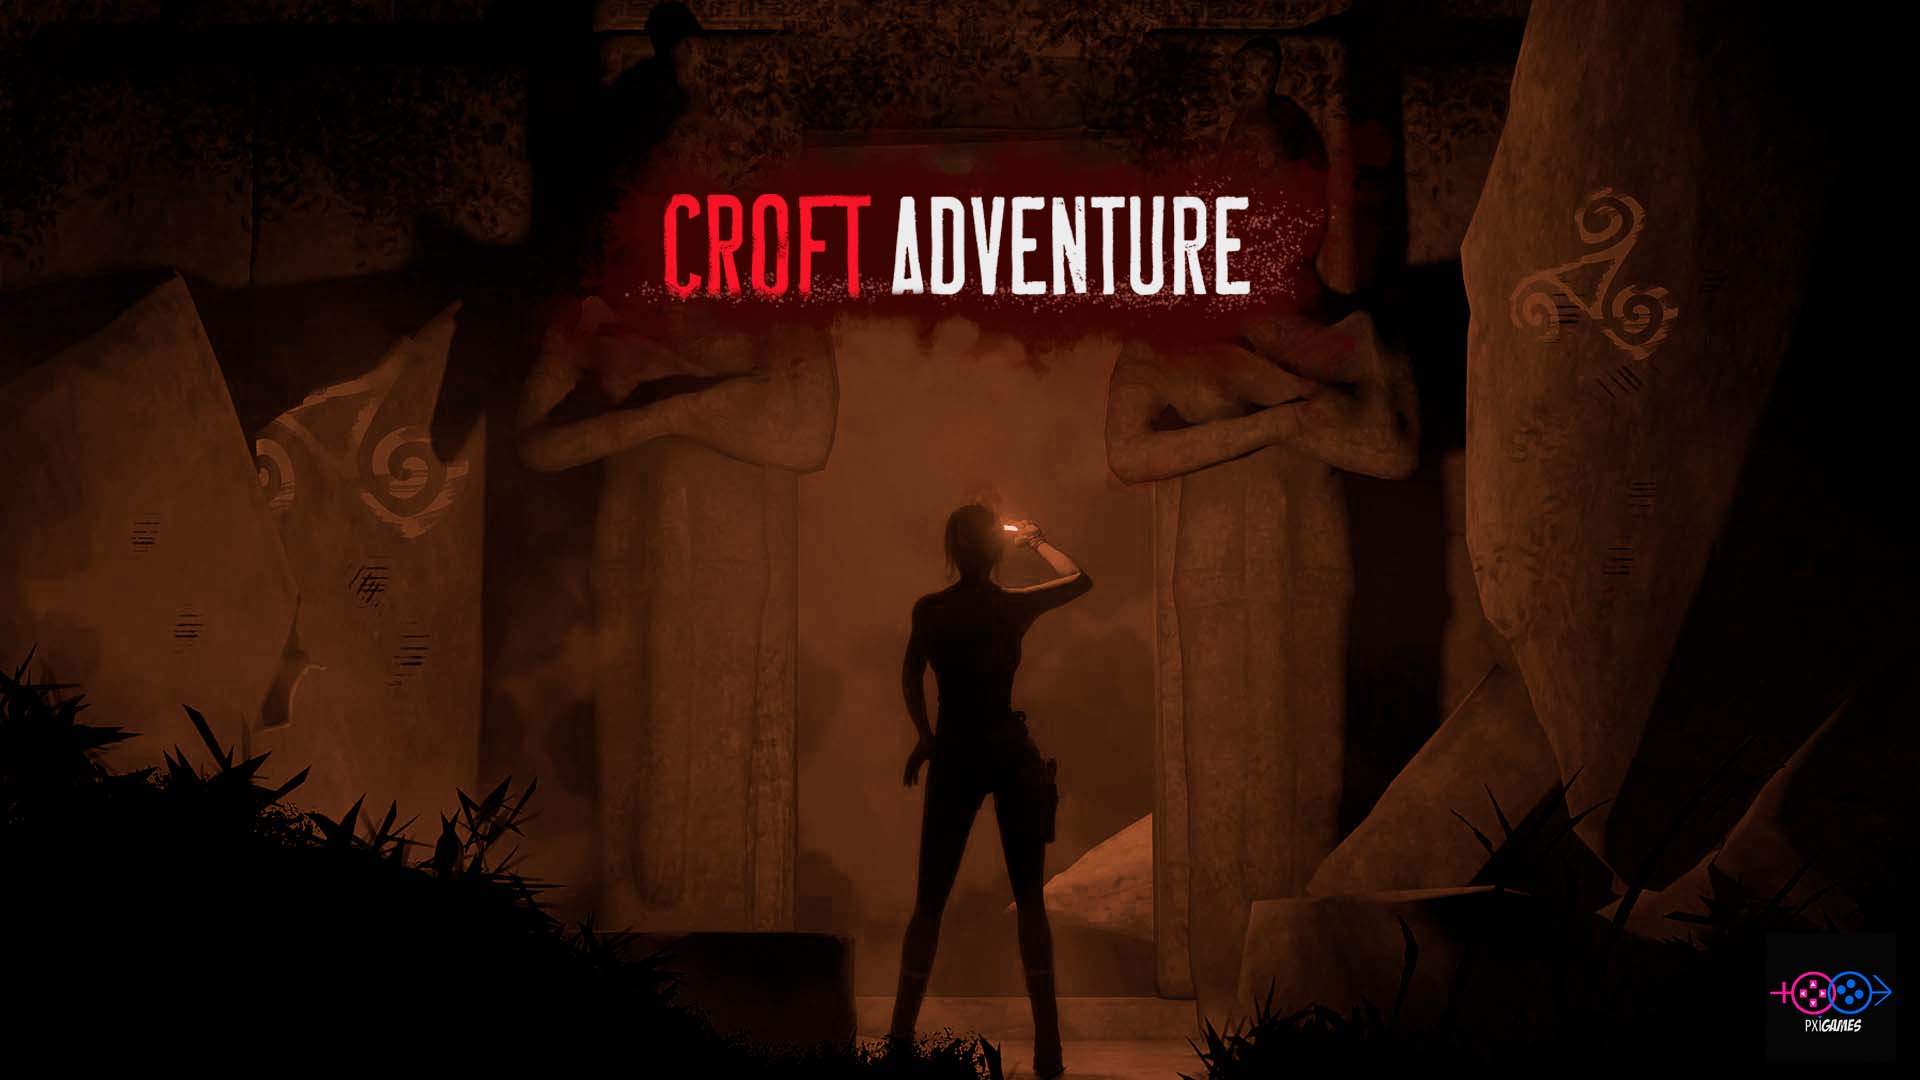 Public Release [Croft Adventure 0.6.1b] - Croft Adventures by PixDES